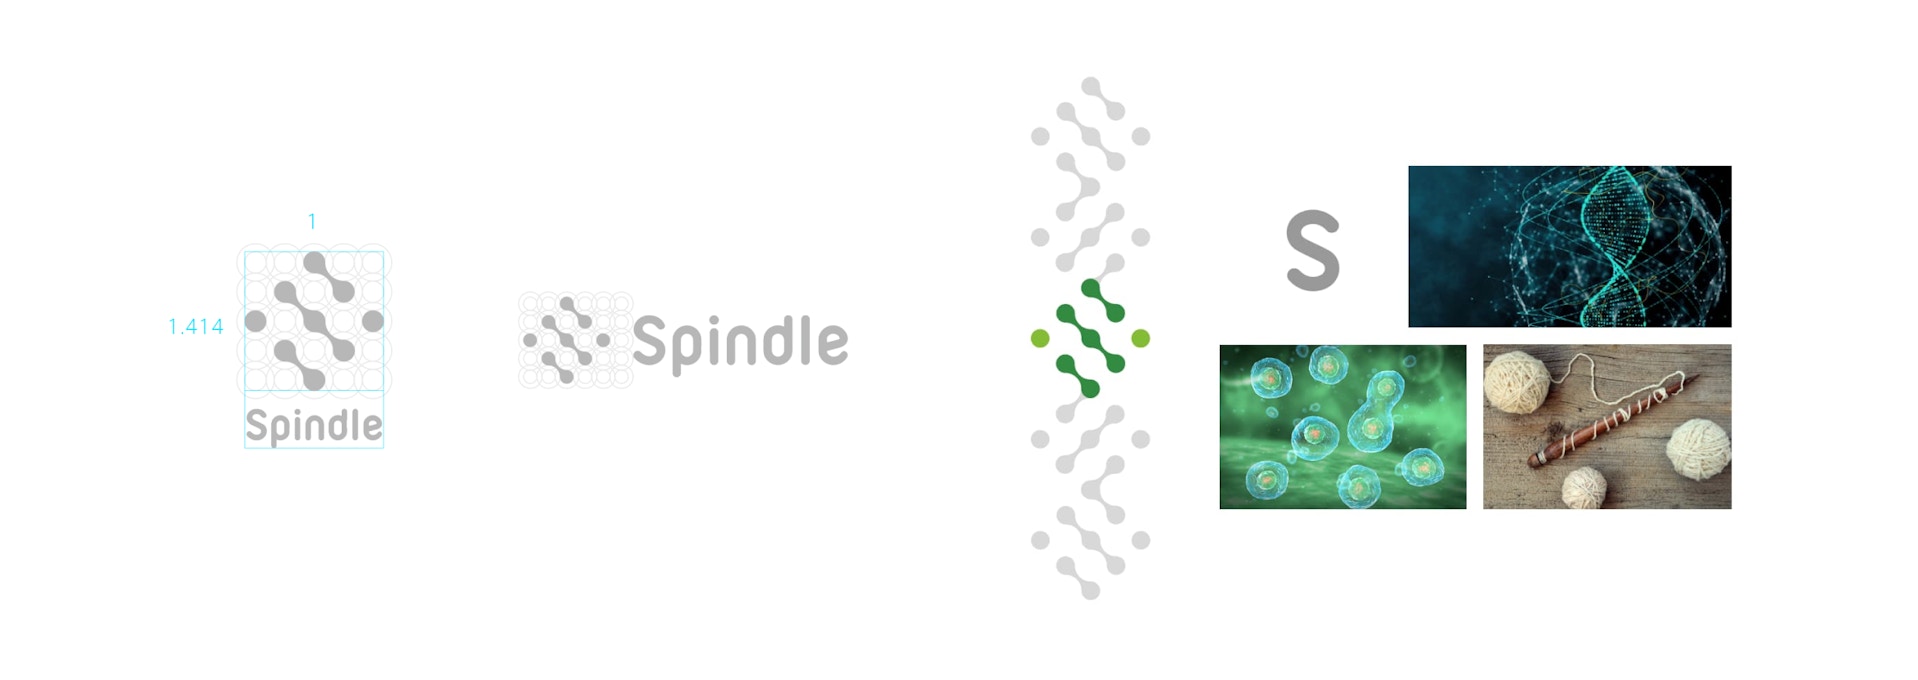 Spindleのロゴの成り立ち　白銀比を用いられてデザインされており、　モチーフとしてアルファベットのSの形、遺伝子、紡錘体などを取り入れて作られている